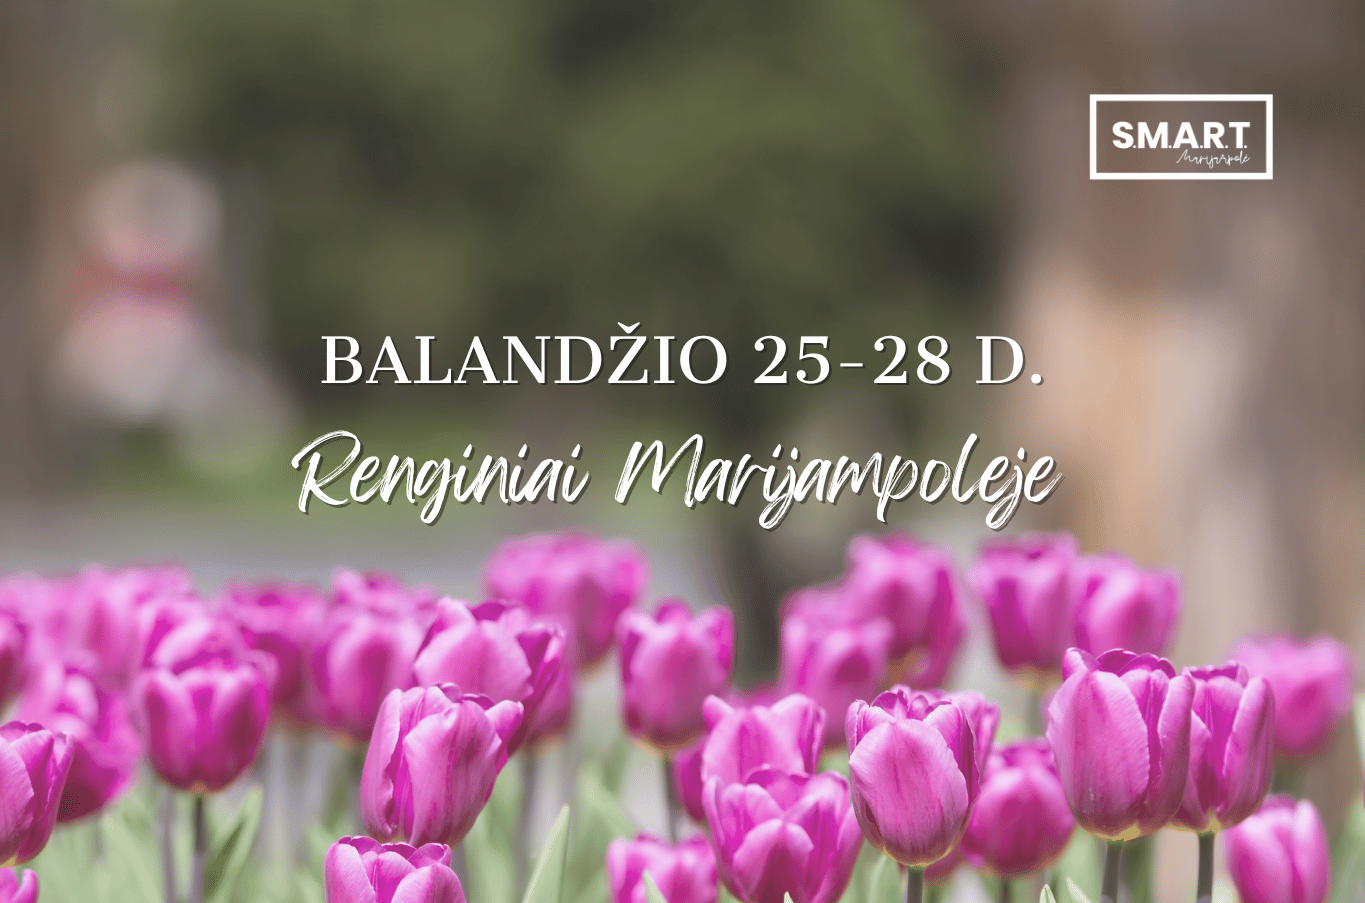 You are currently viewing Savaitgalio renginiai Marijampolėje | 04.25-04.28